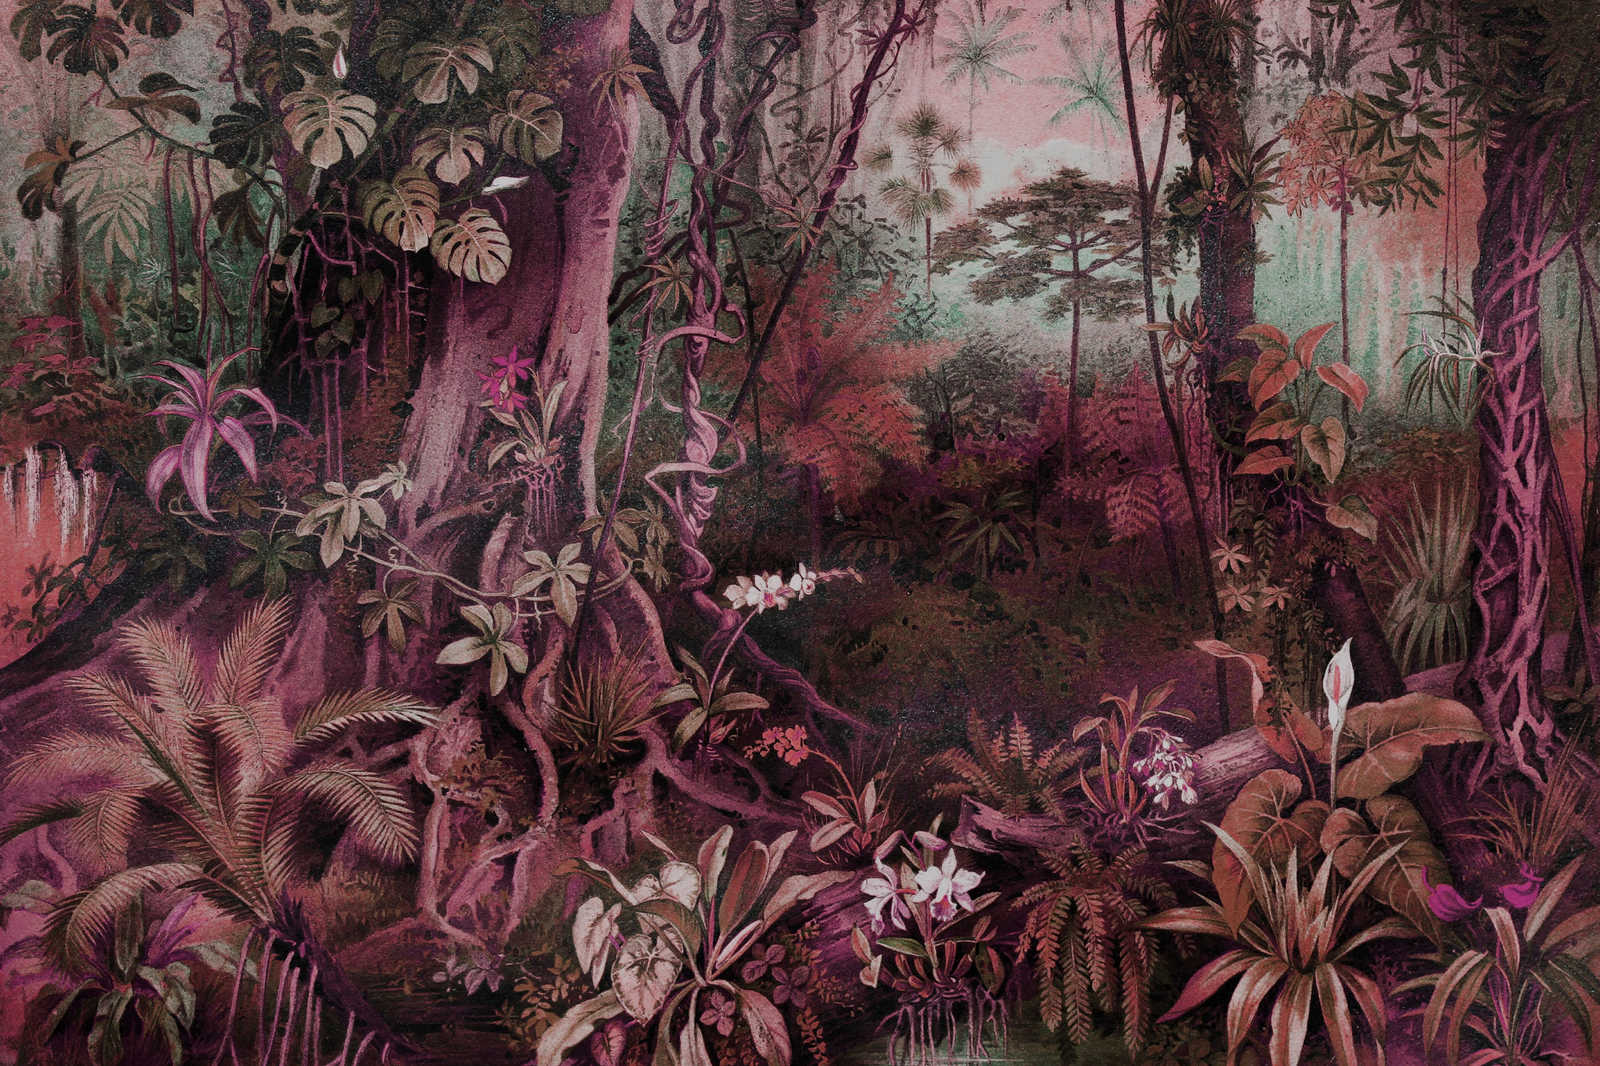             Dschungel Leinwandbild im Zeichenstil | lila, grün – 0,90 m x 0,60 m
        